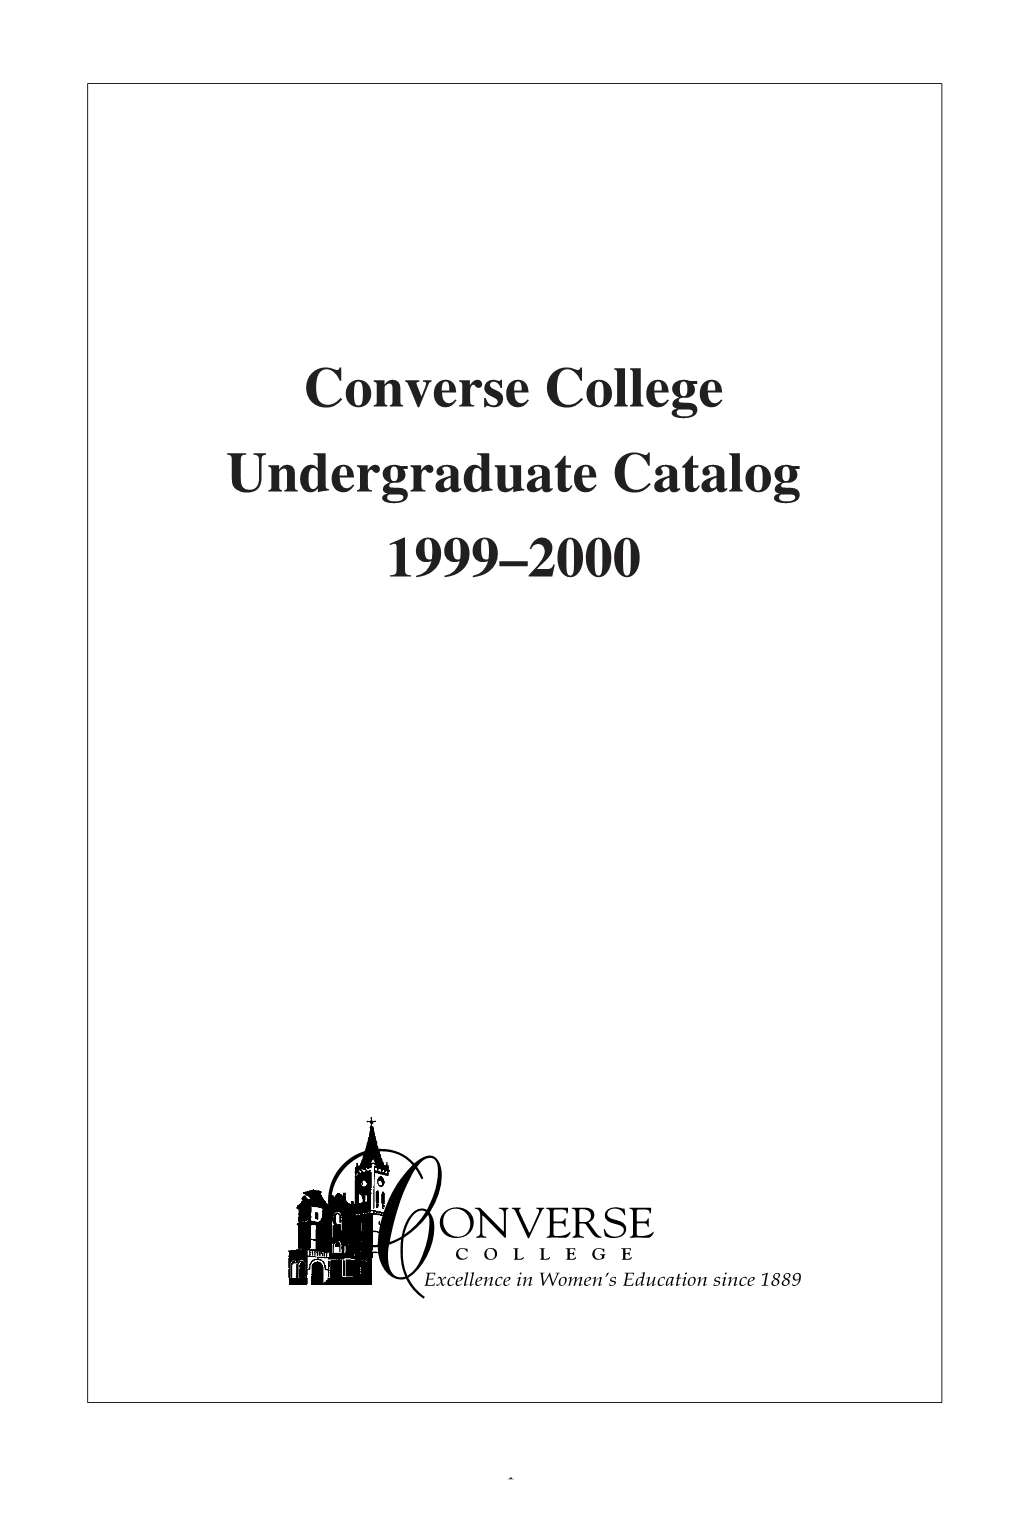 1999-2000 Undergraduate Catalog